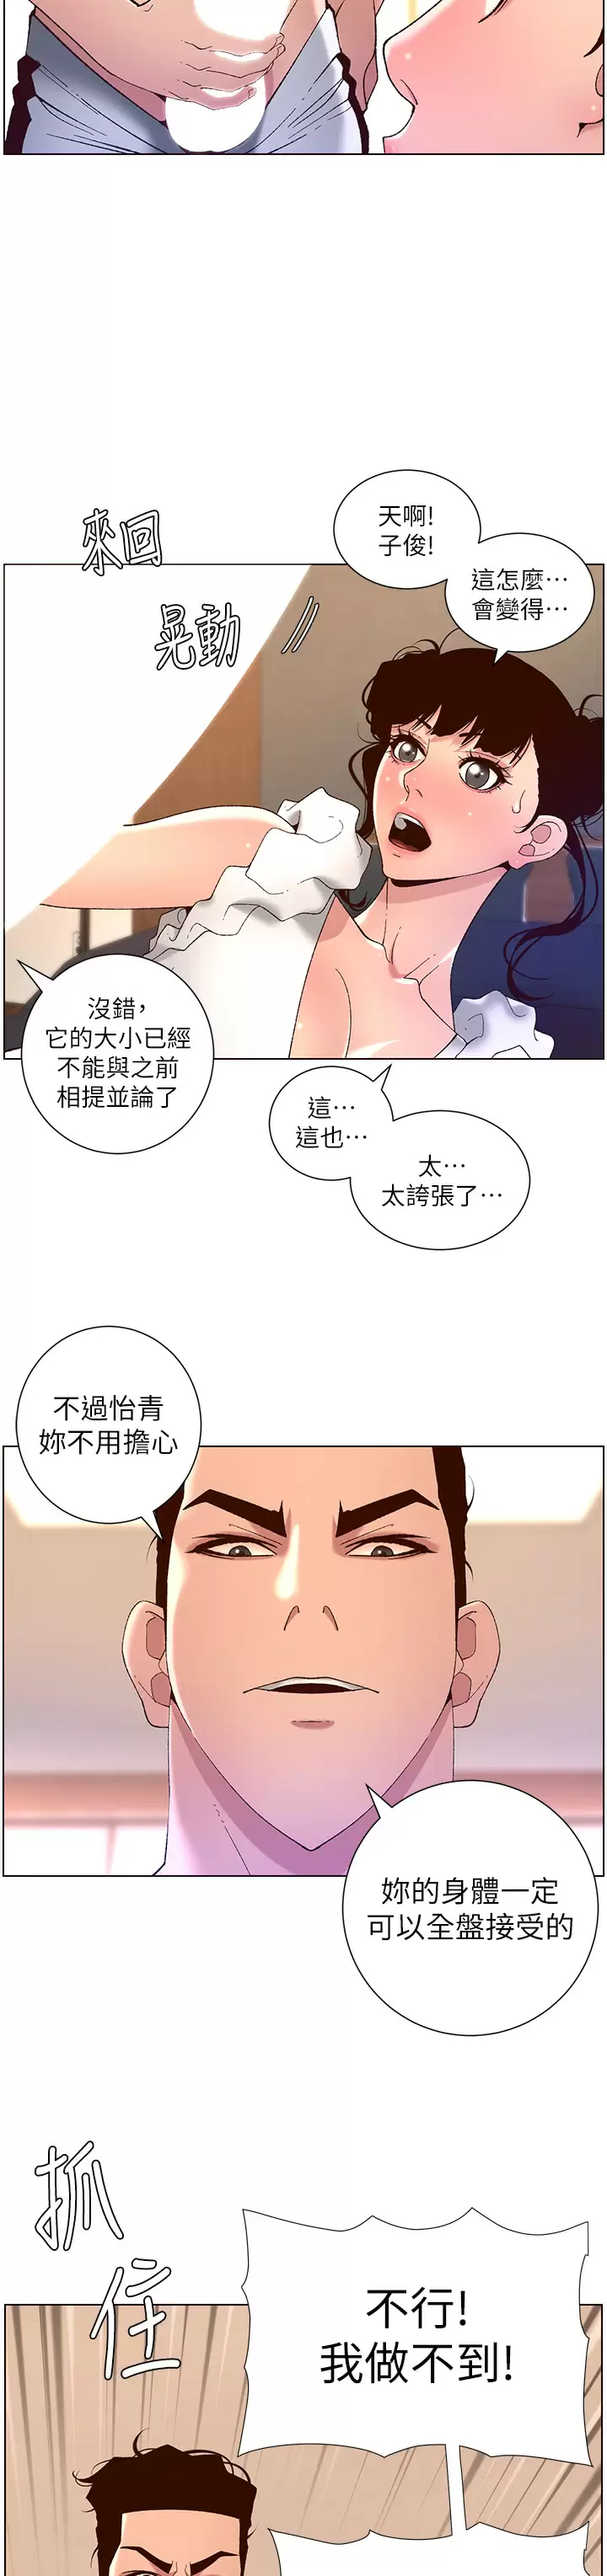 韩国污漫画 帝王App 第41话 让女人爽翻天的新招式! 3